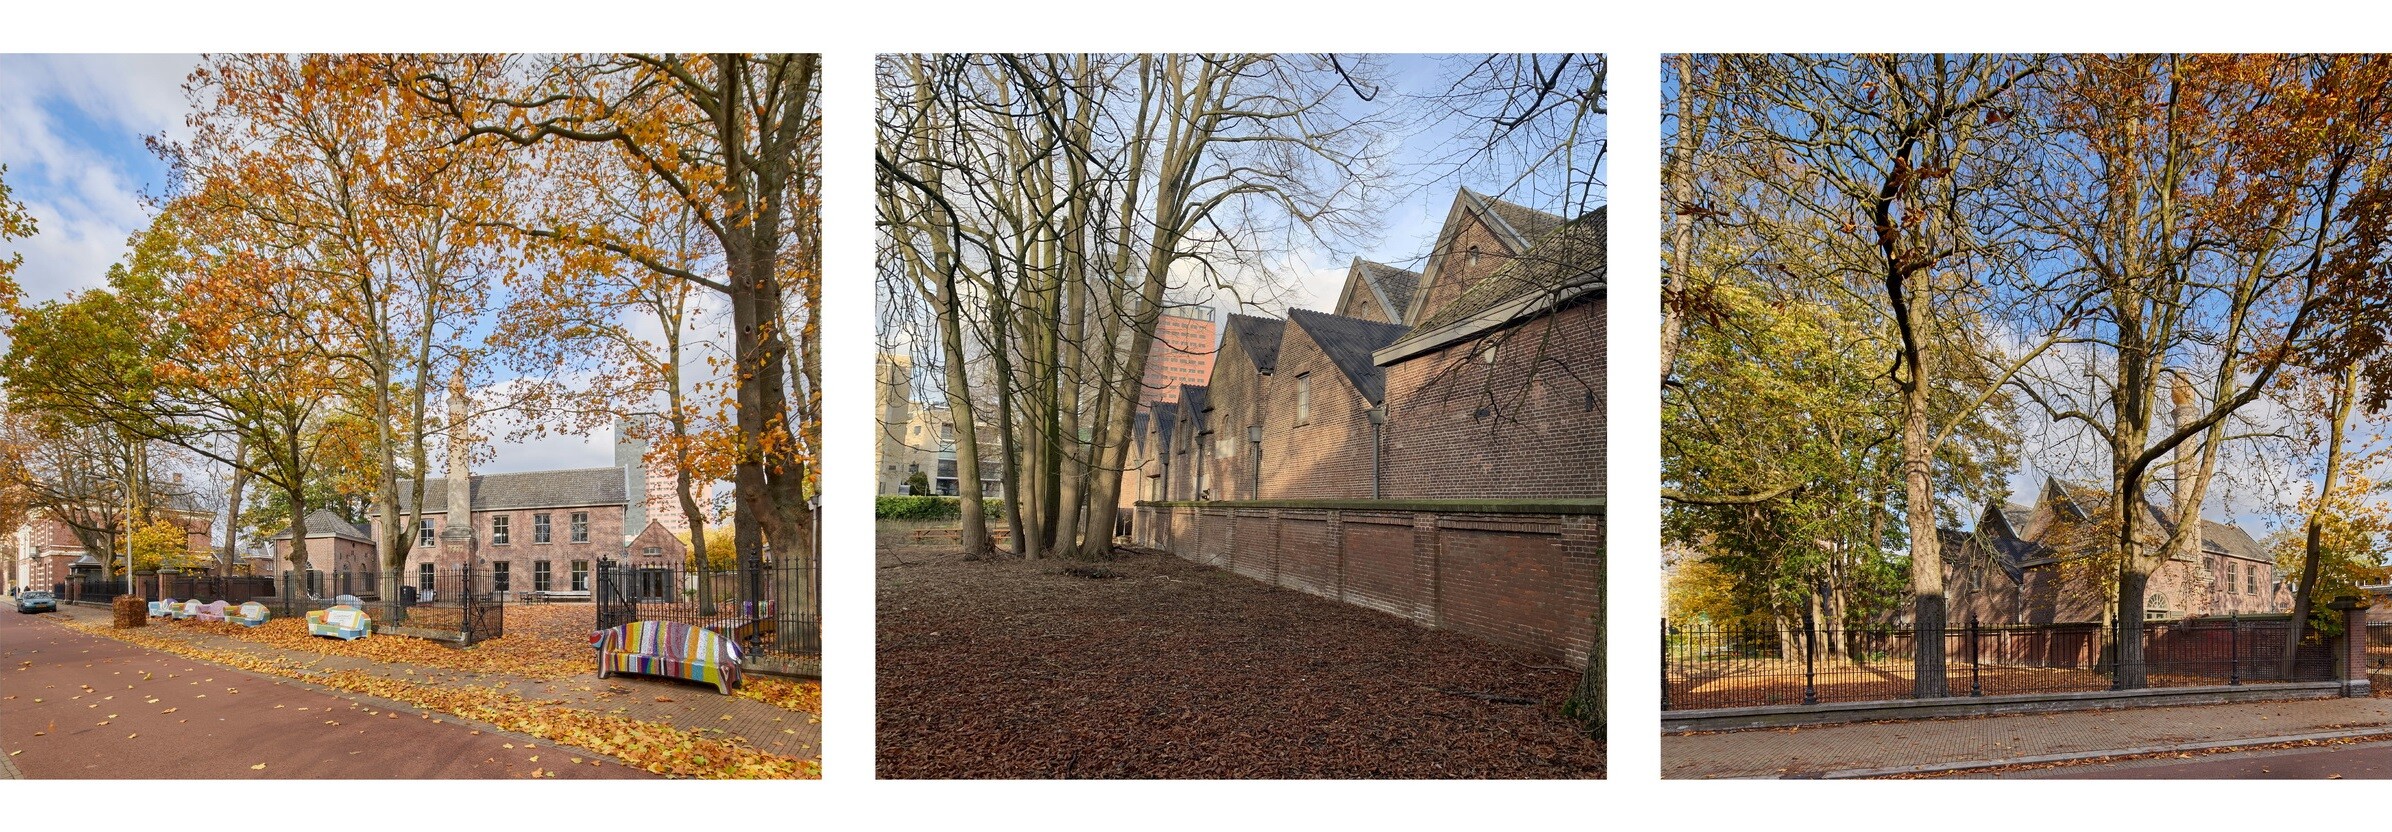 1Zecc-Duvelhof-housing-transformation-Tilburg-photoa.jpg